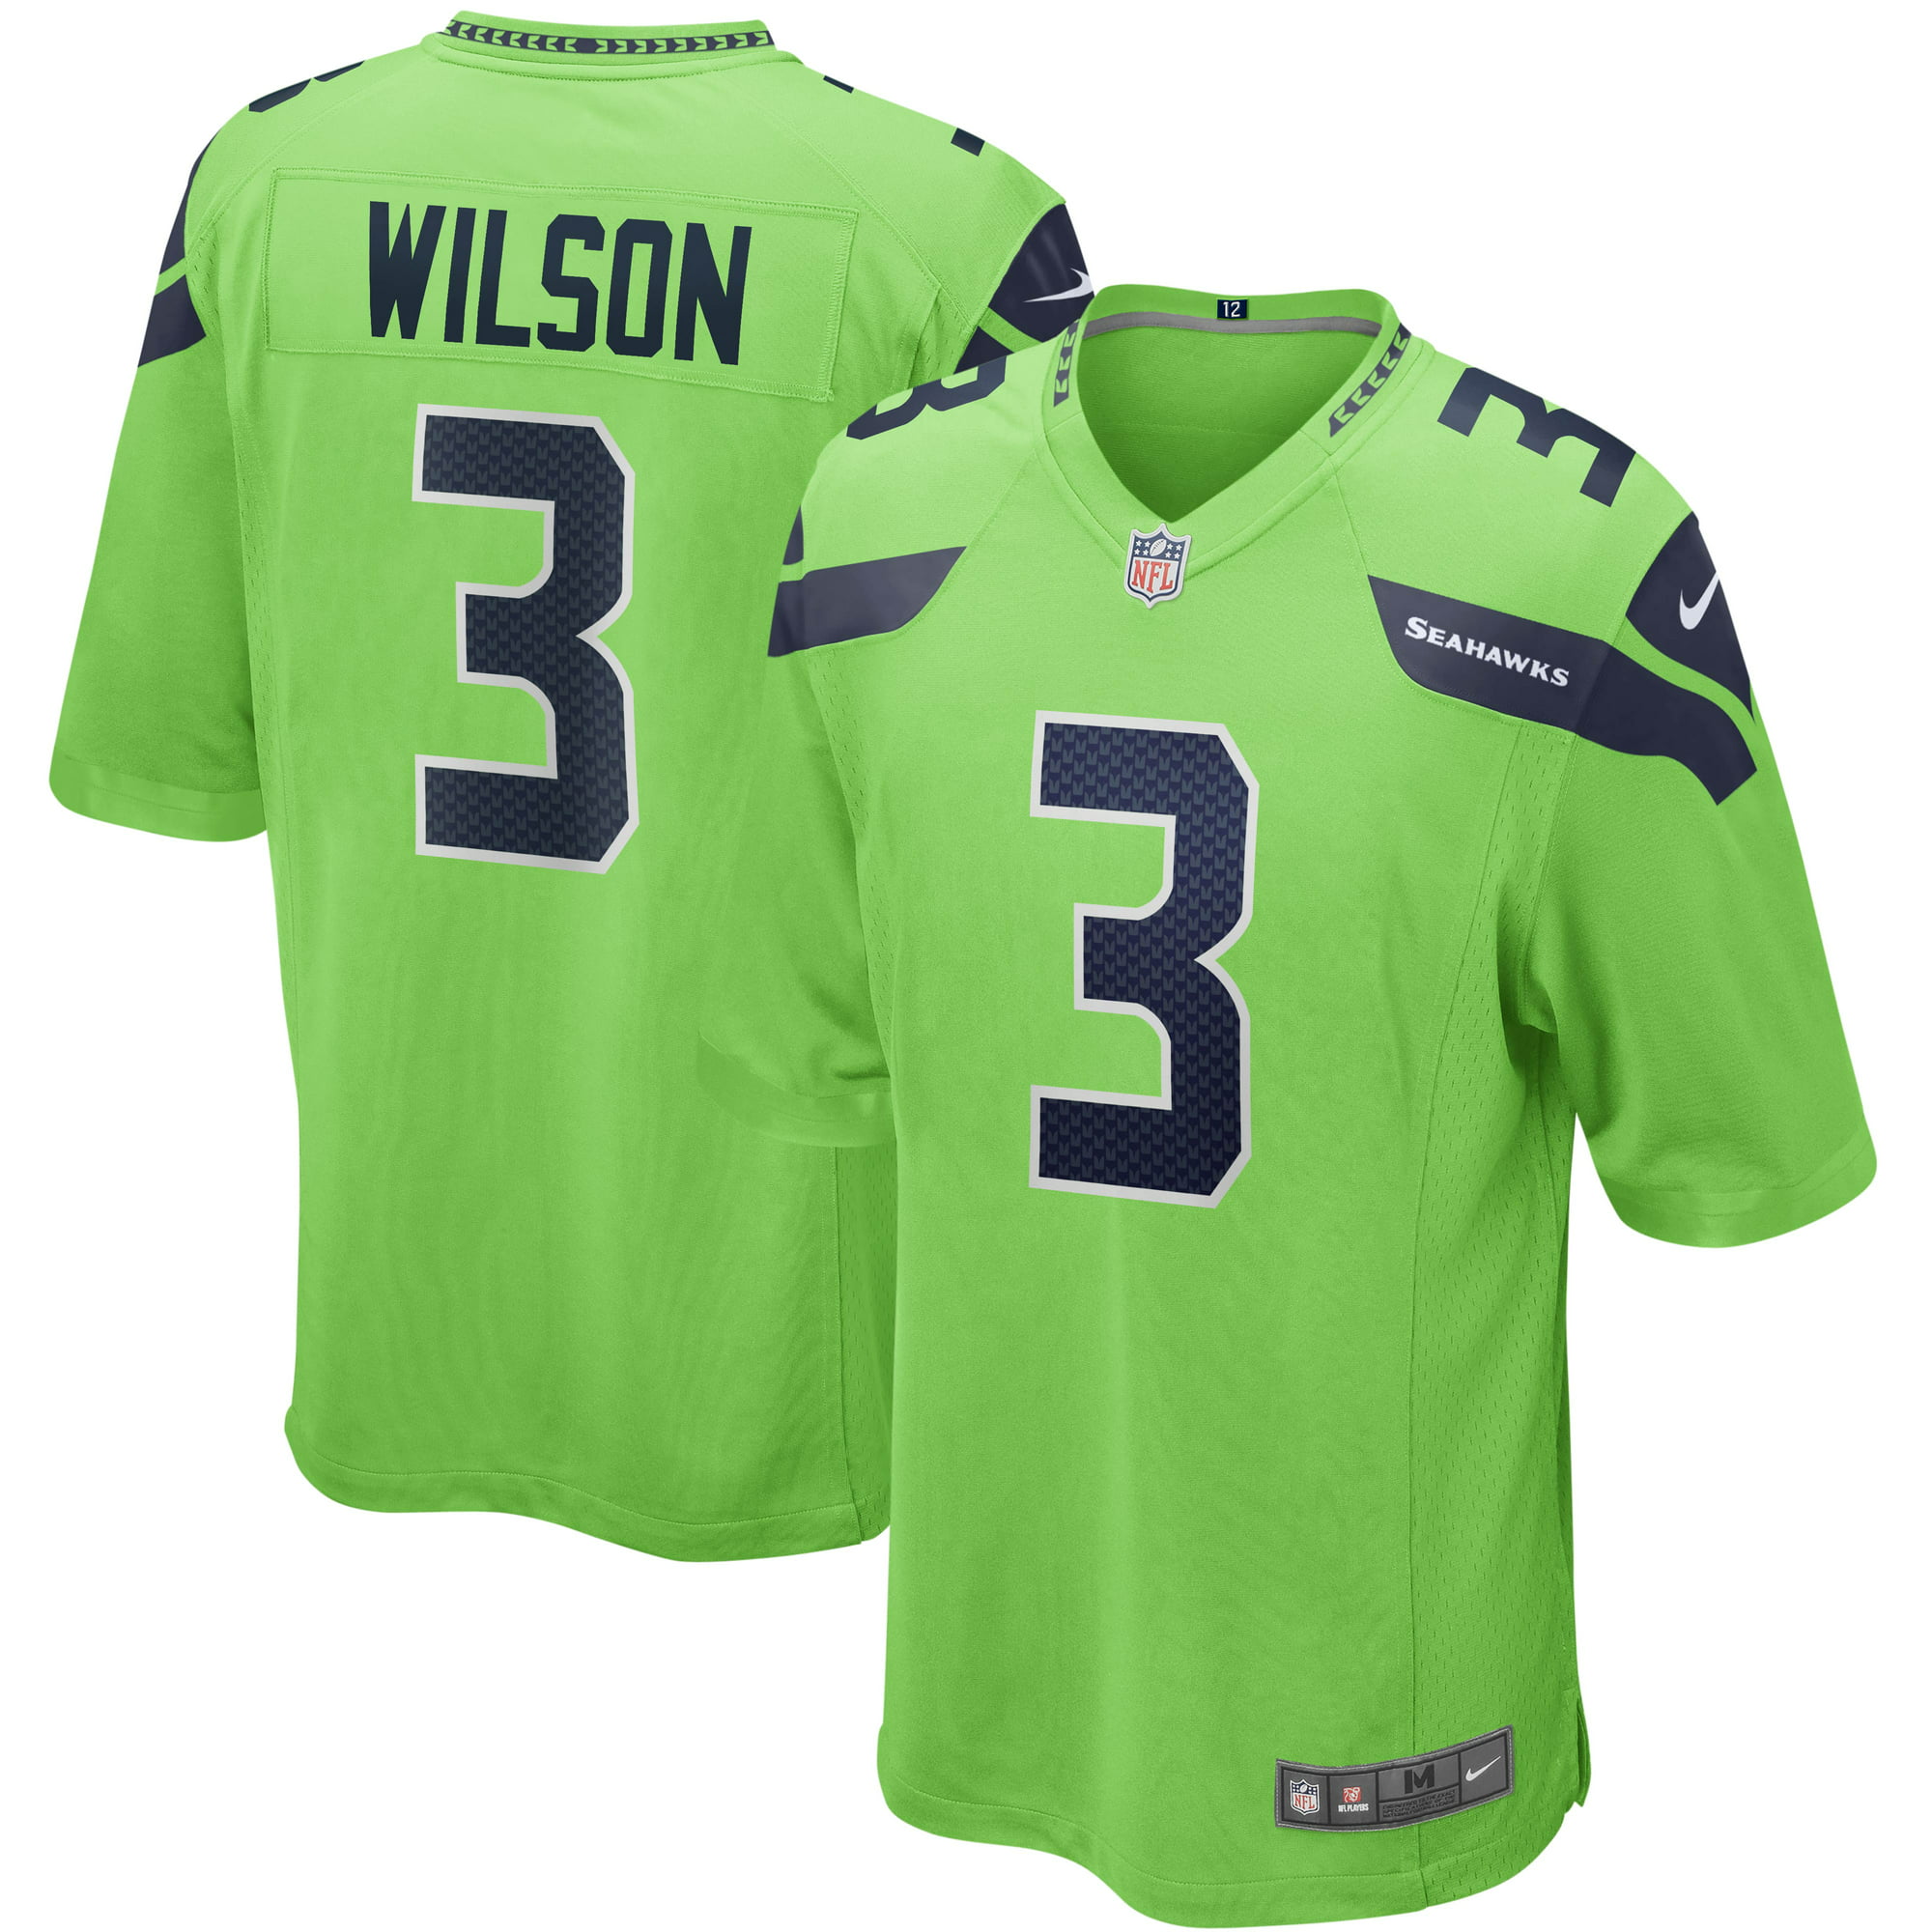 Russell Wilson Signed Nike Seahawks Jersey (Fanatics)